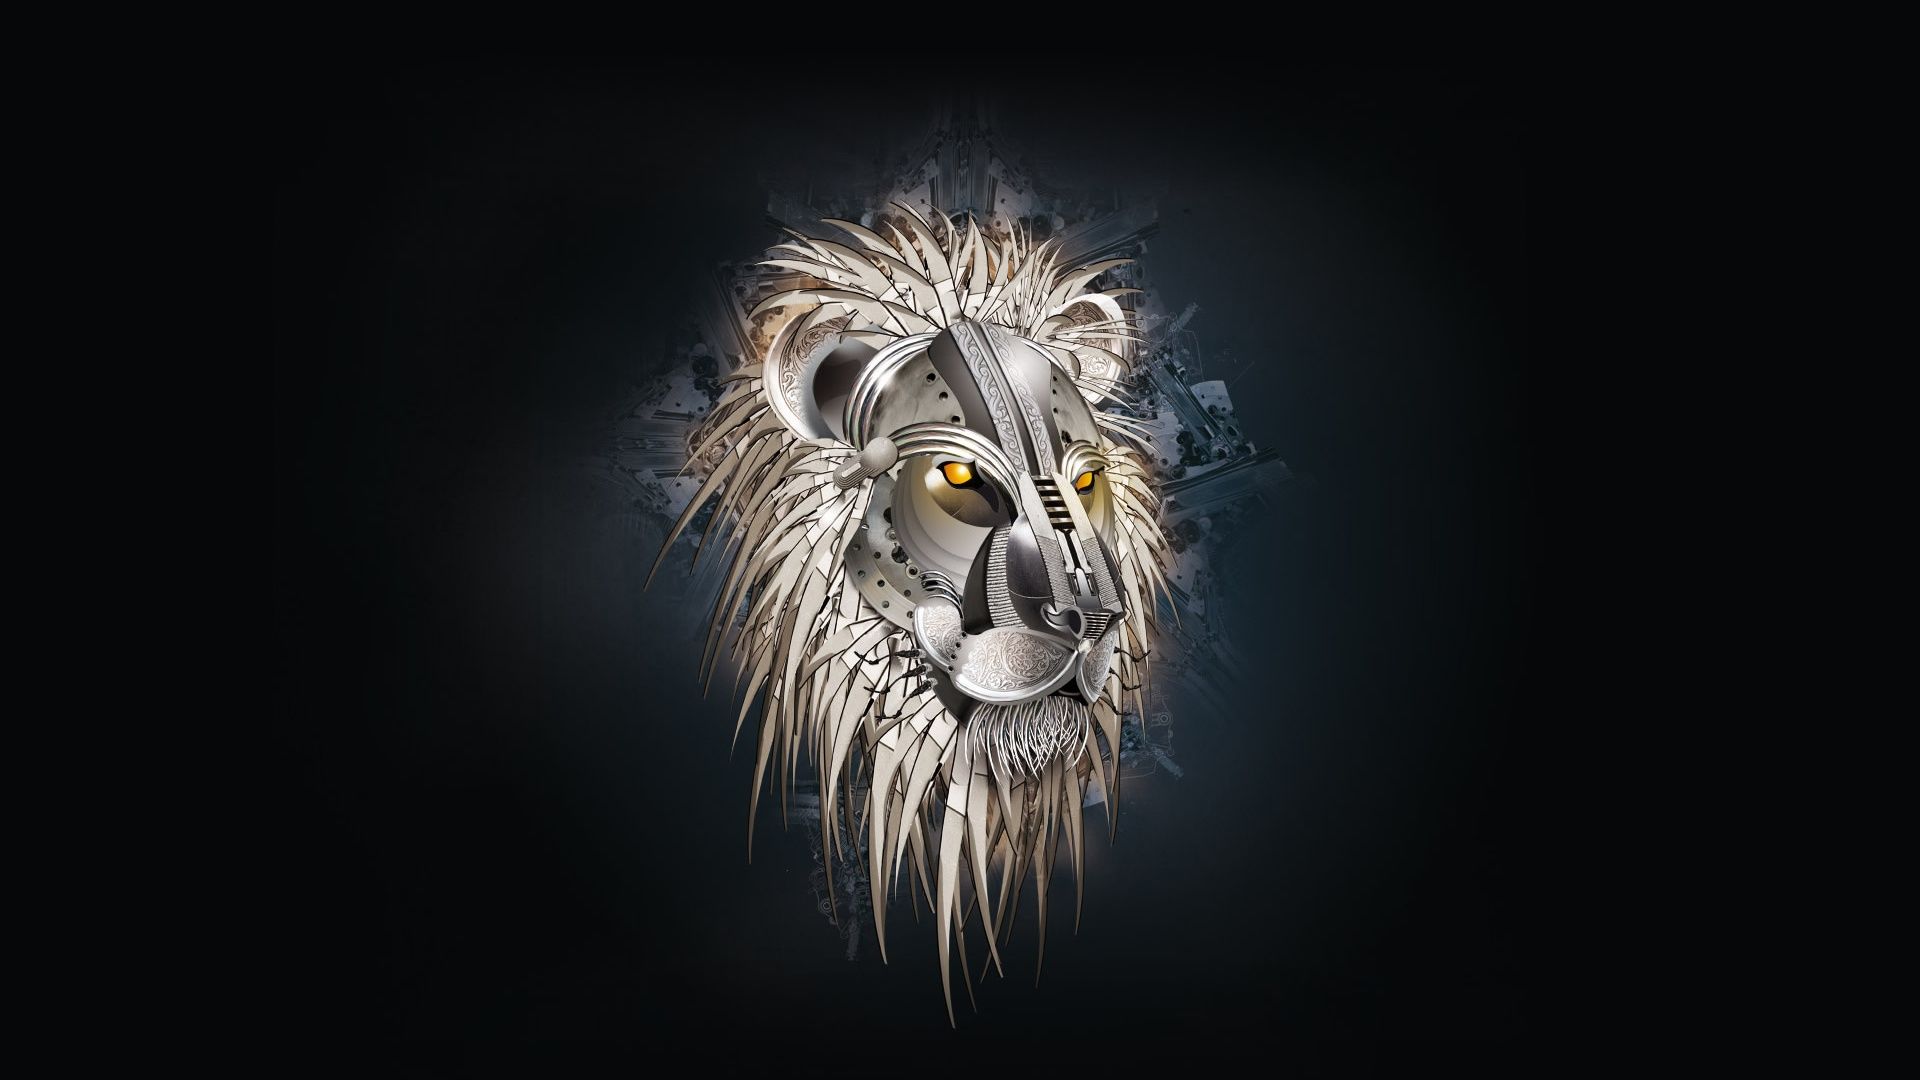 lion wallpaper hd download